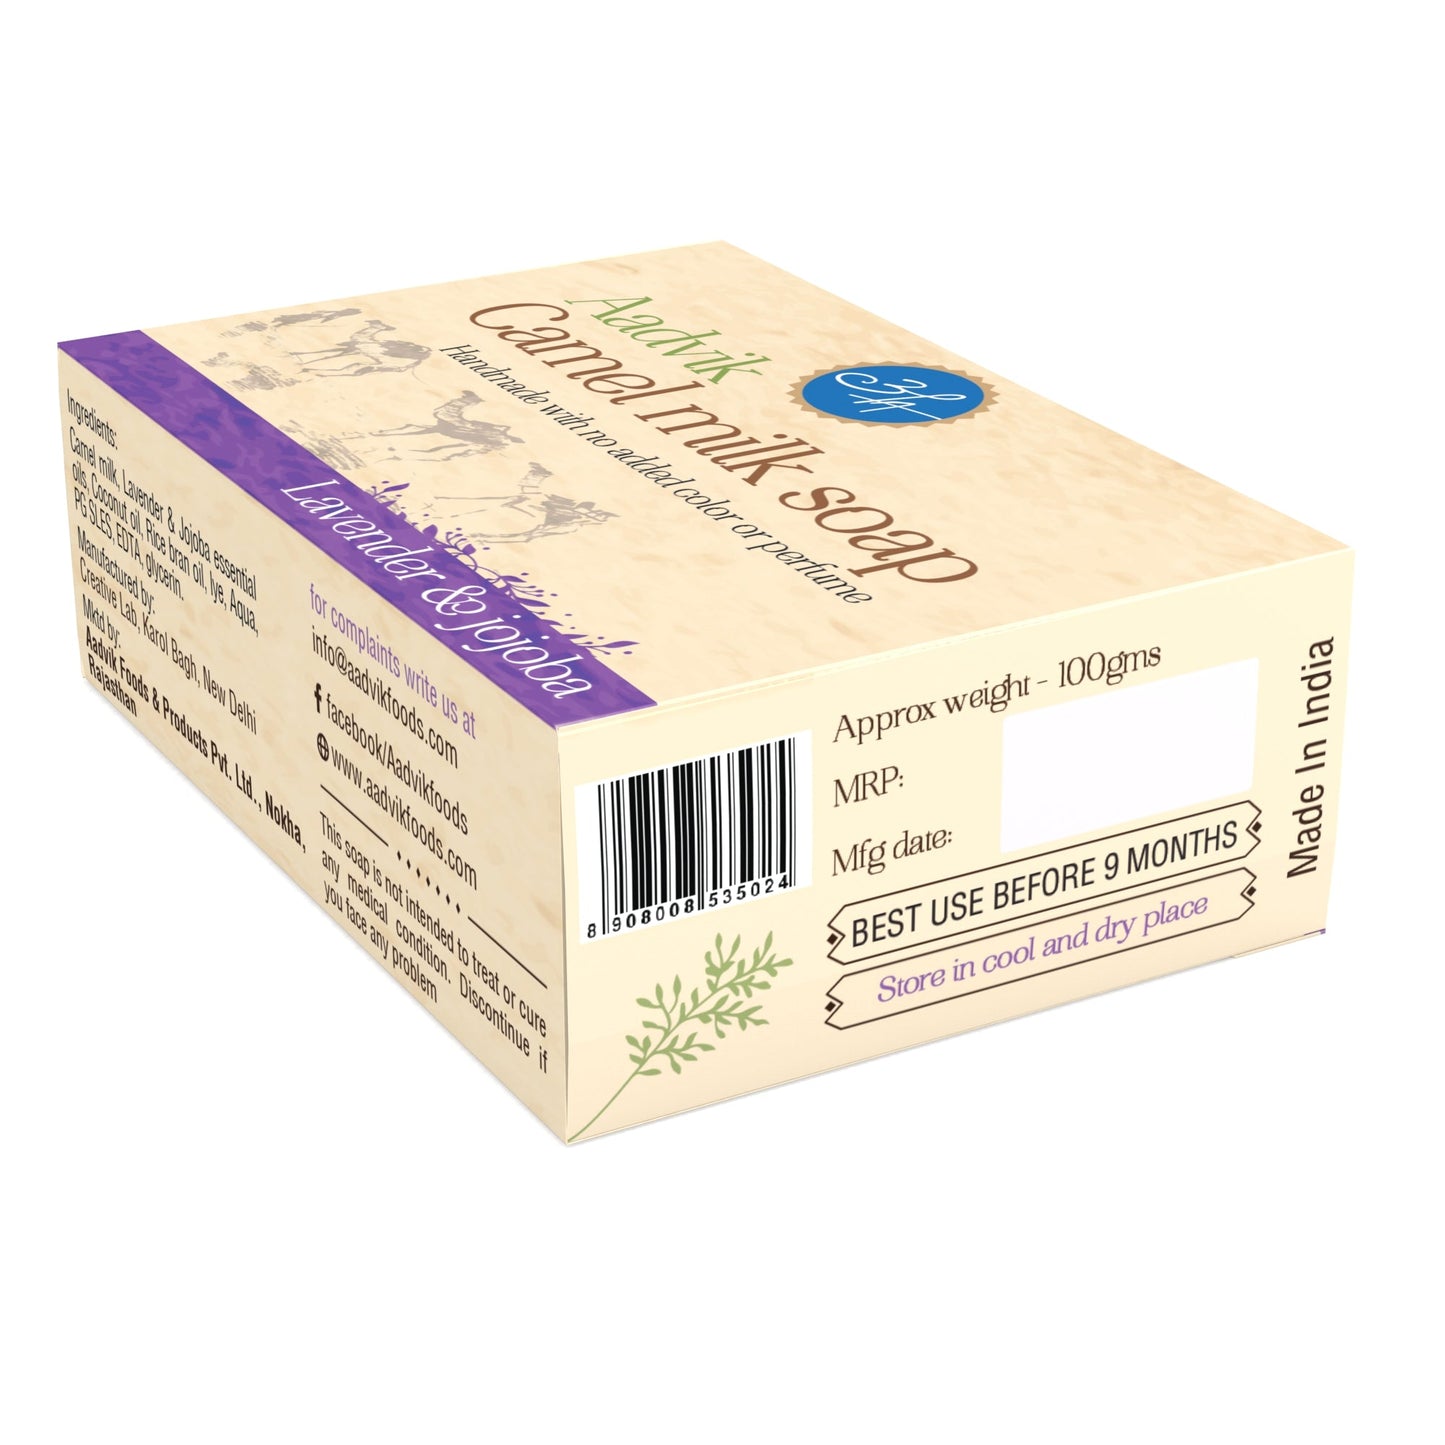 Camel Milk Soap । With Lavender & Jojoba Oil | 100gm